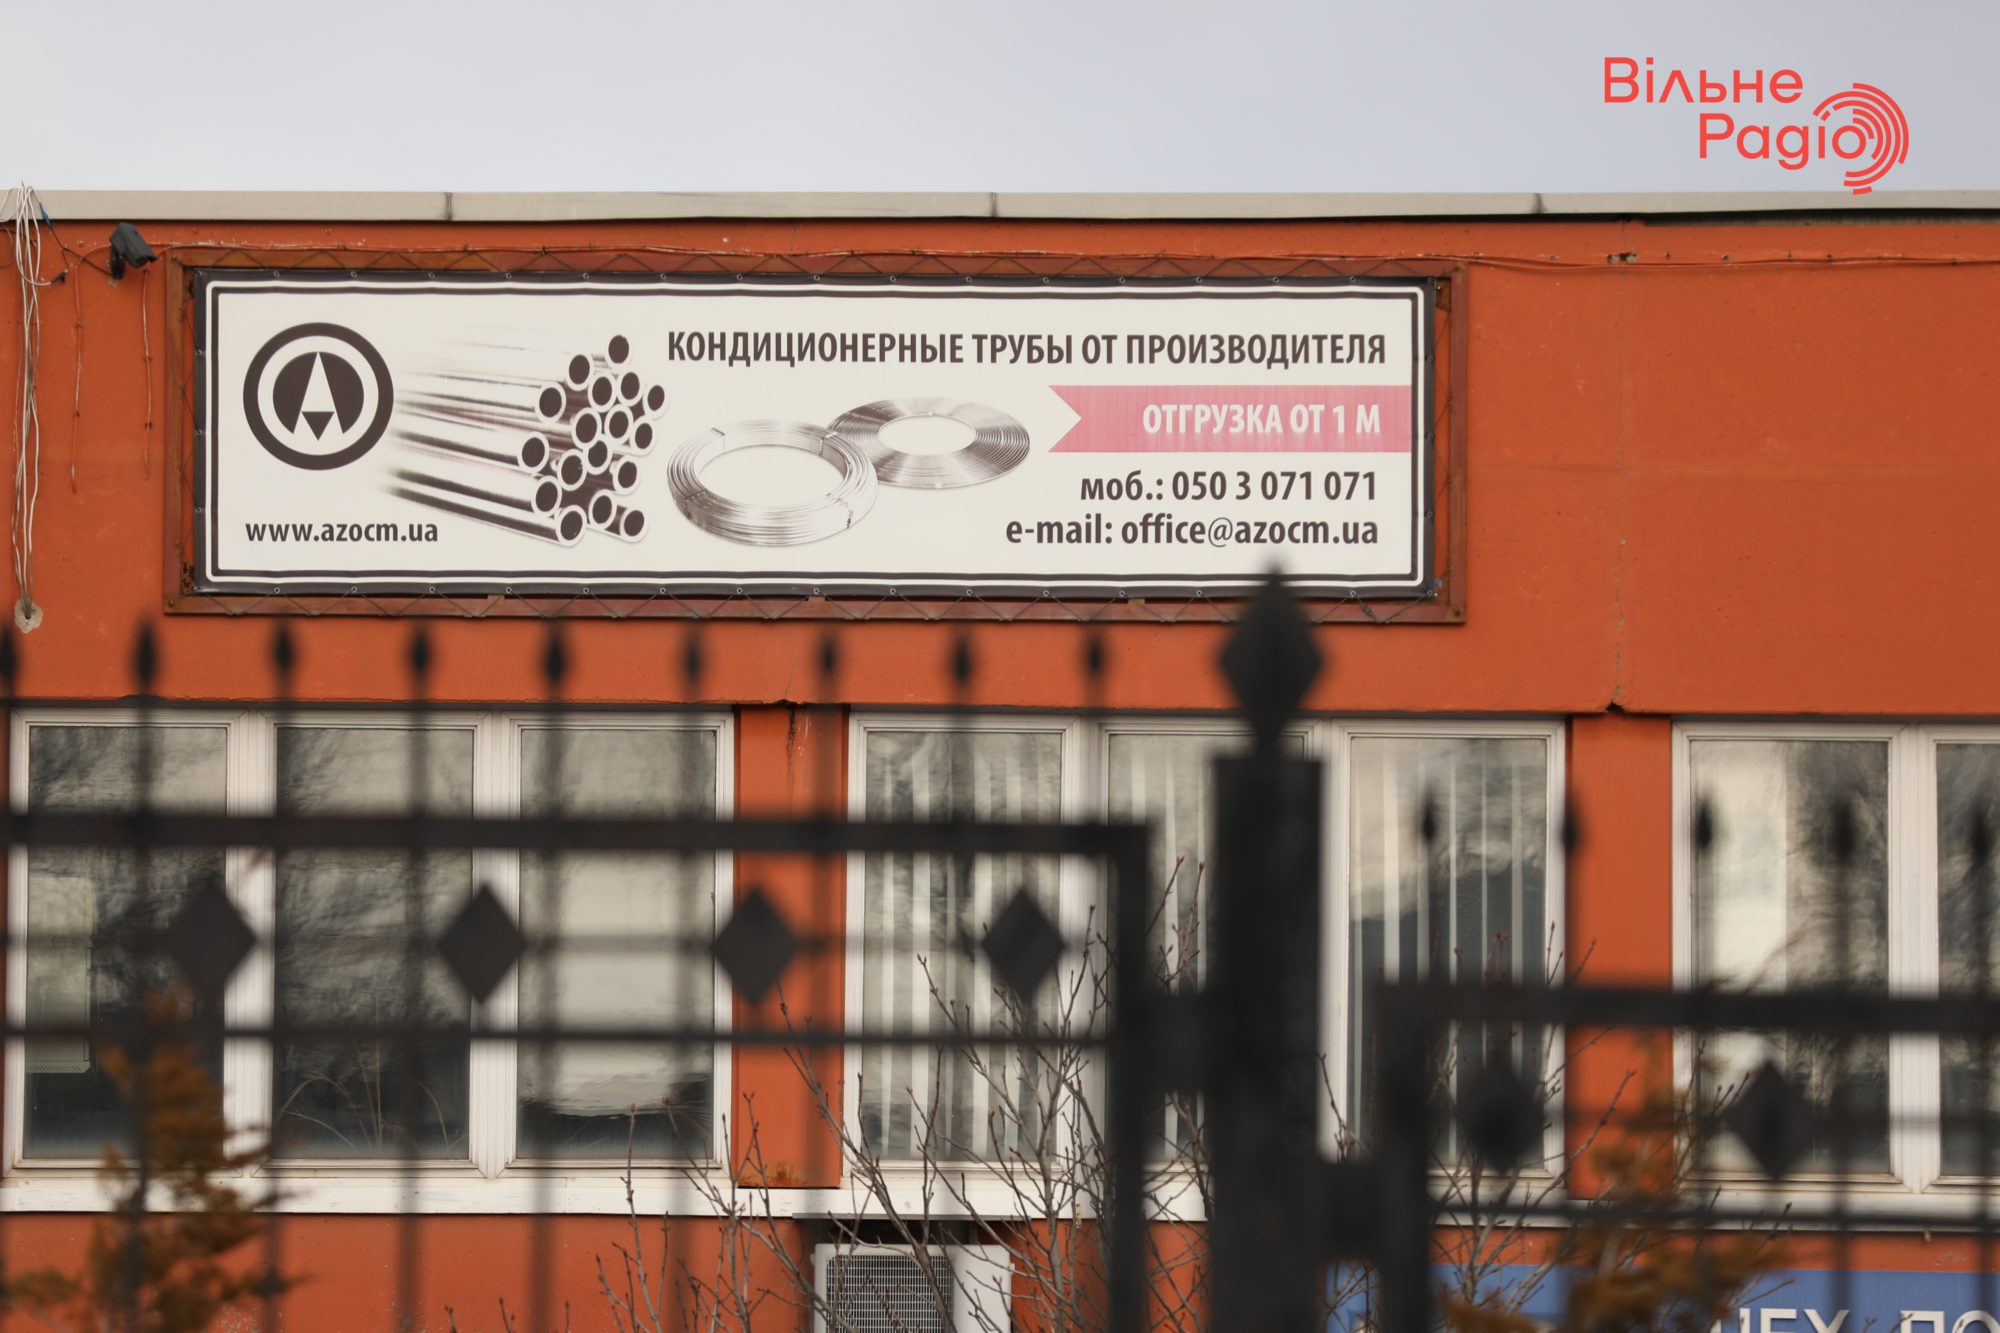 Глав 7 громад Донбасса просят убрать рекламу, которая нарушает “языковой” закон. Какая ситуация в Бахмуте”(ФОТО) 14